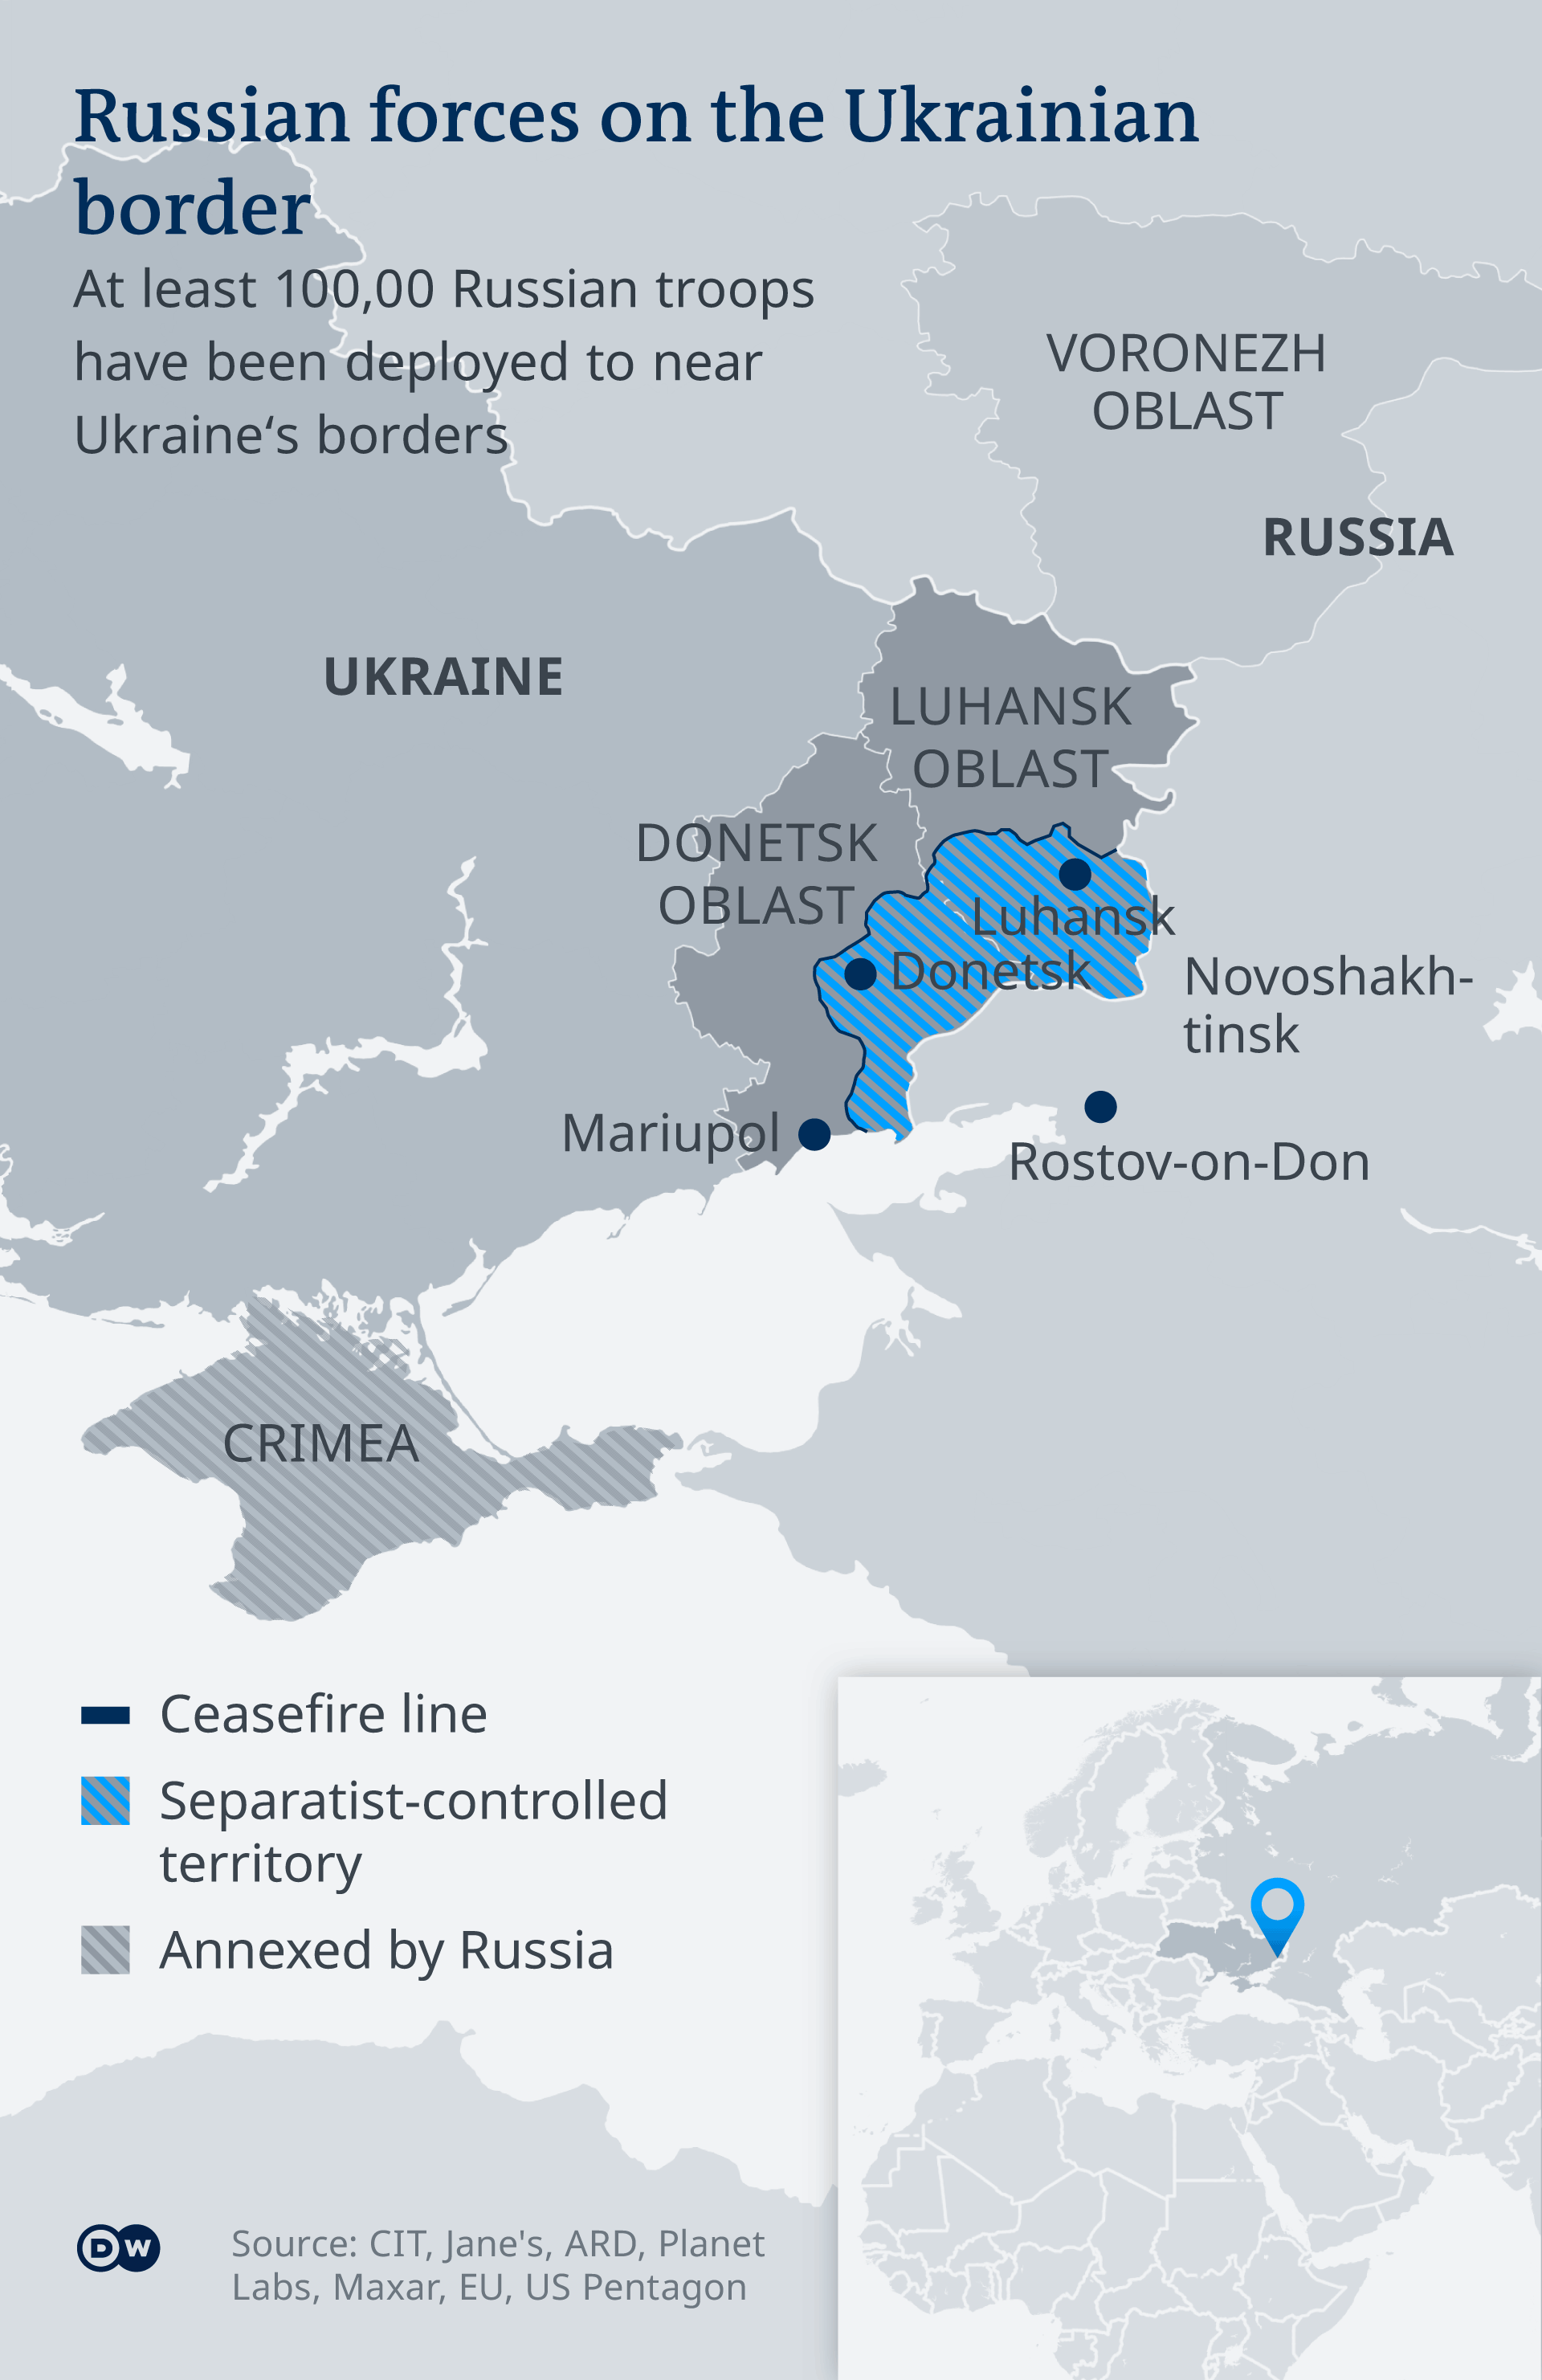 Prezenţa militară rusă la frontiera estică a Ucrainei